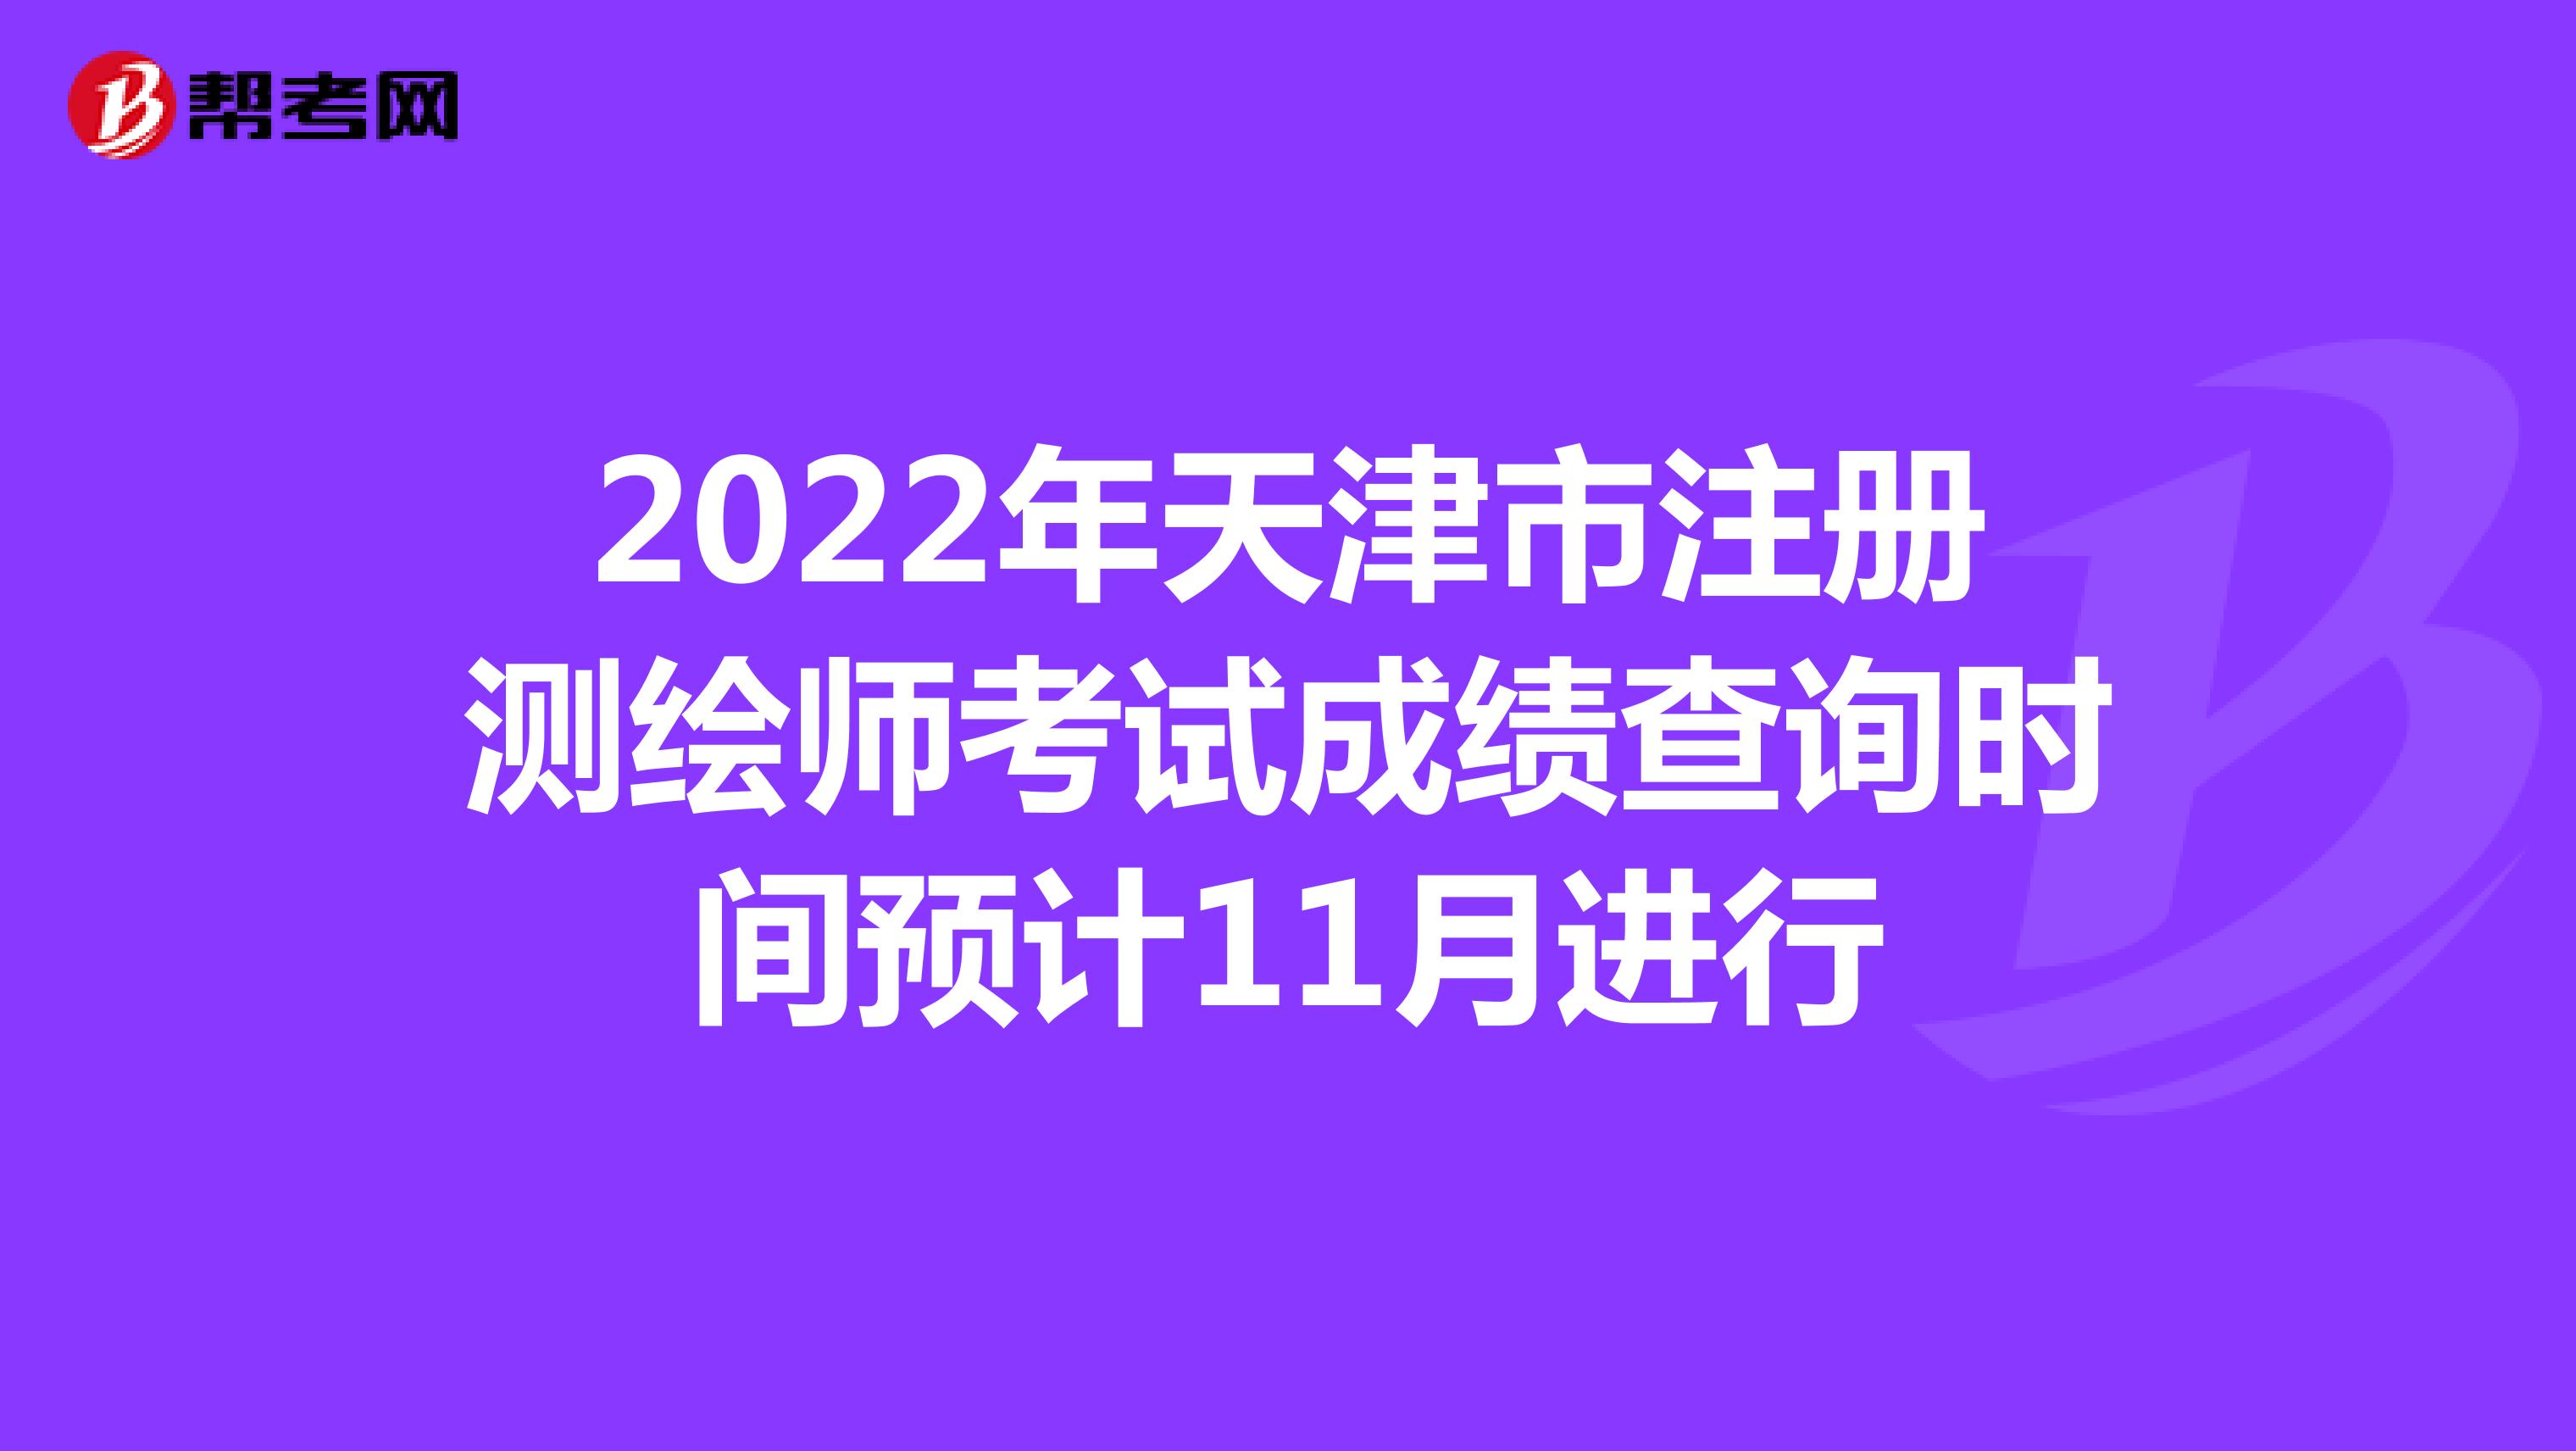 2022年天津市注册测绘师考试成绩查询时间预计11月进行